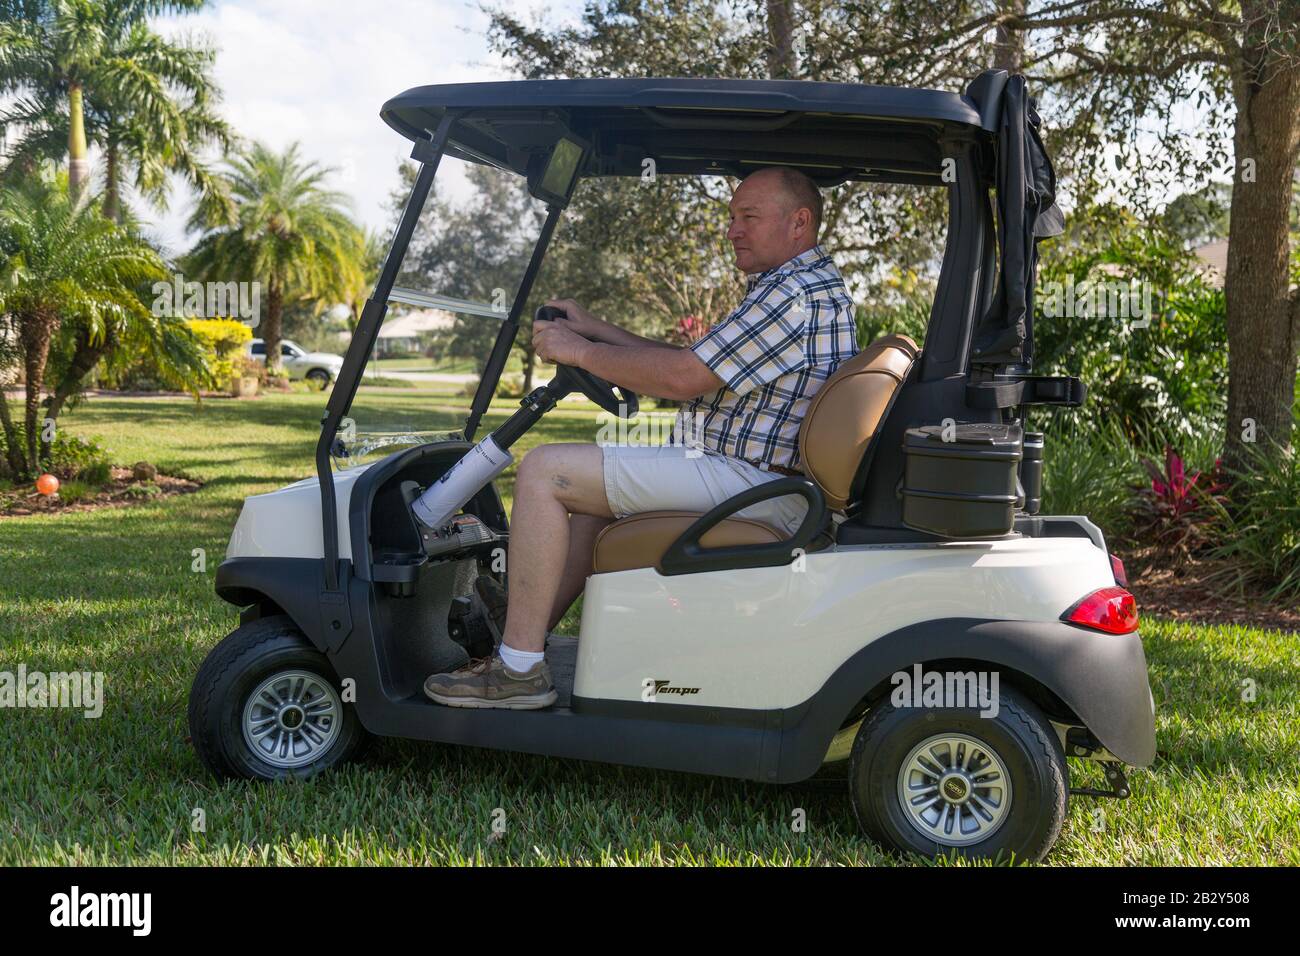 Un homme portant une chemise à carreaux conduit une voiturette de golf Club car Tempo à travers l'herbe d'une maison de Palm City, en Floride. Banque D'Images